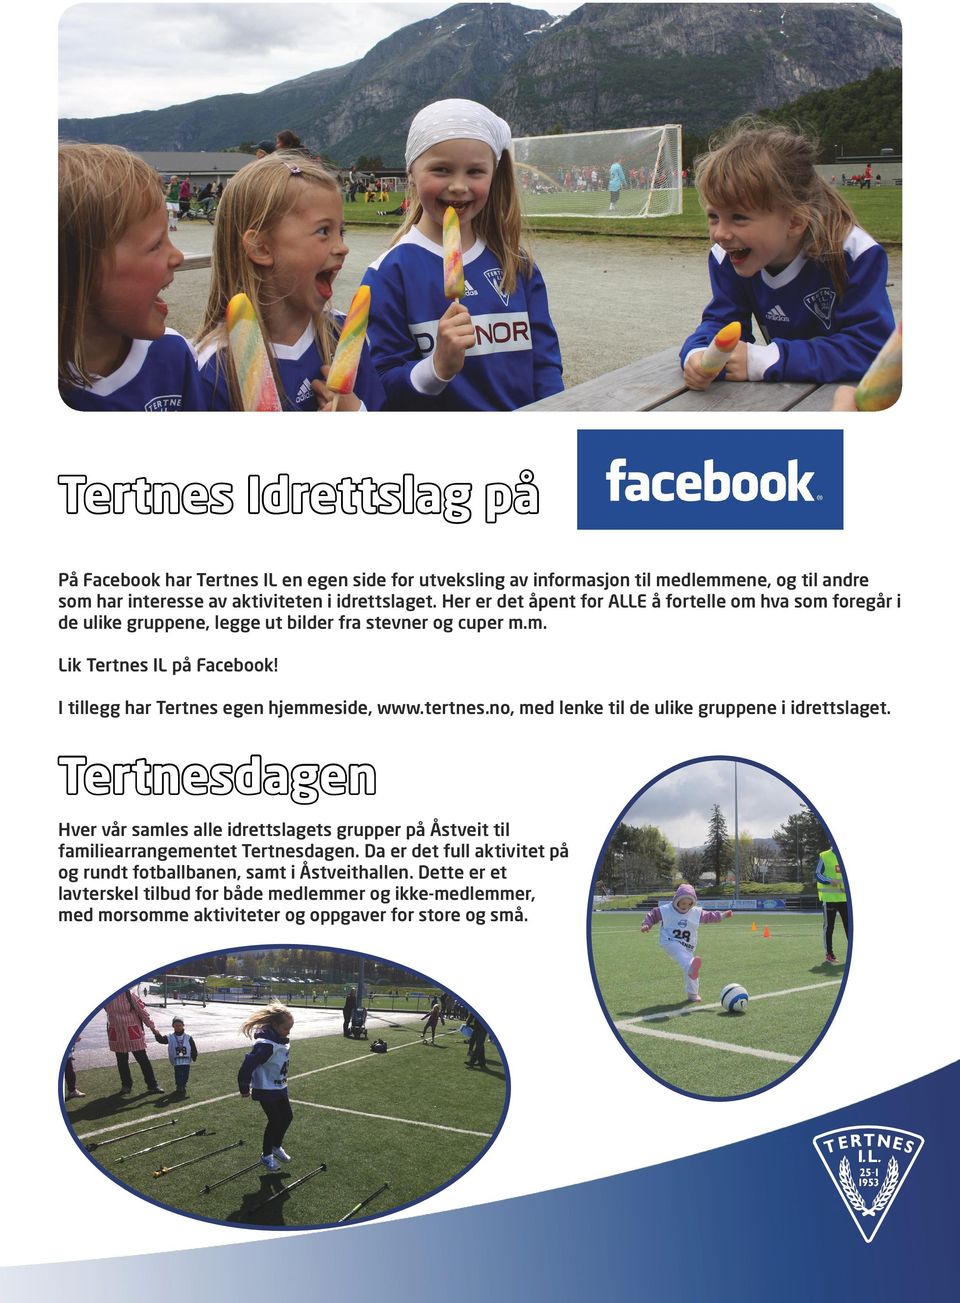 I tillegg har Tertnes egen hjemmeside, www.tertnes.no, med lenke til de ulike gruppene i idrettslaget.